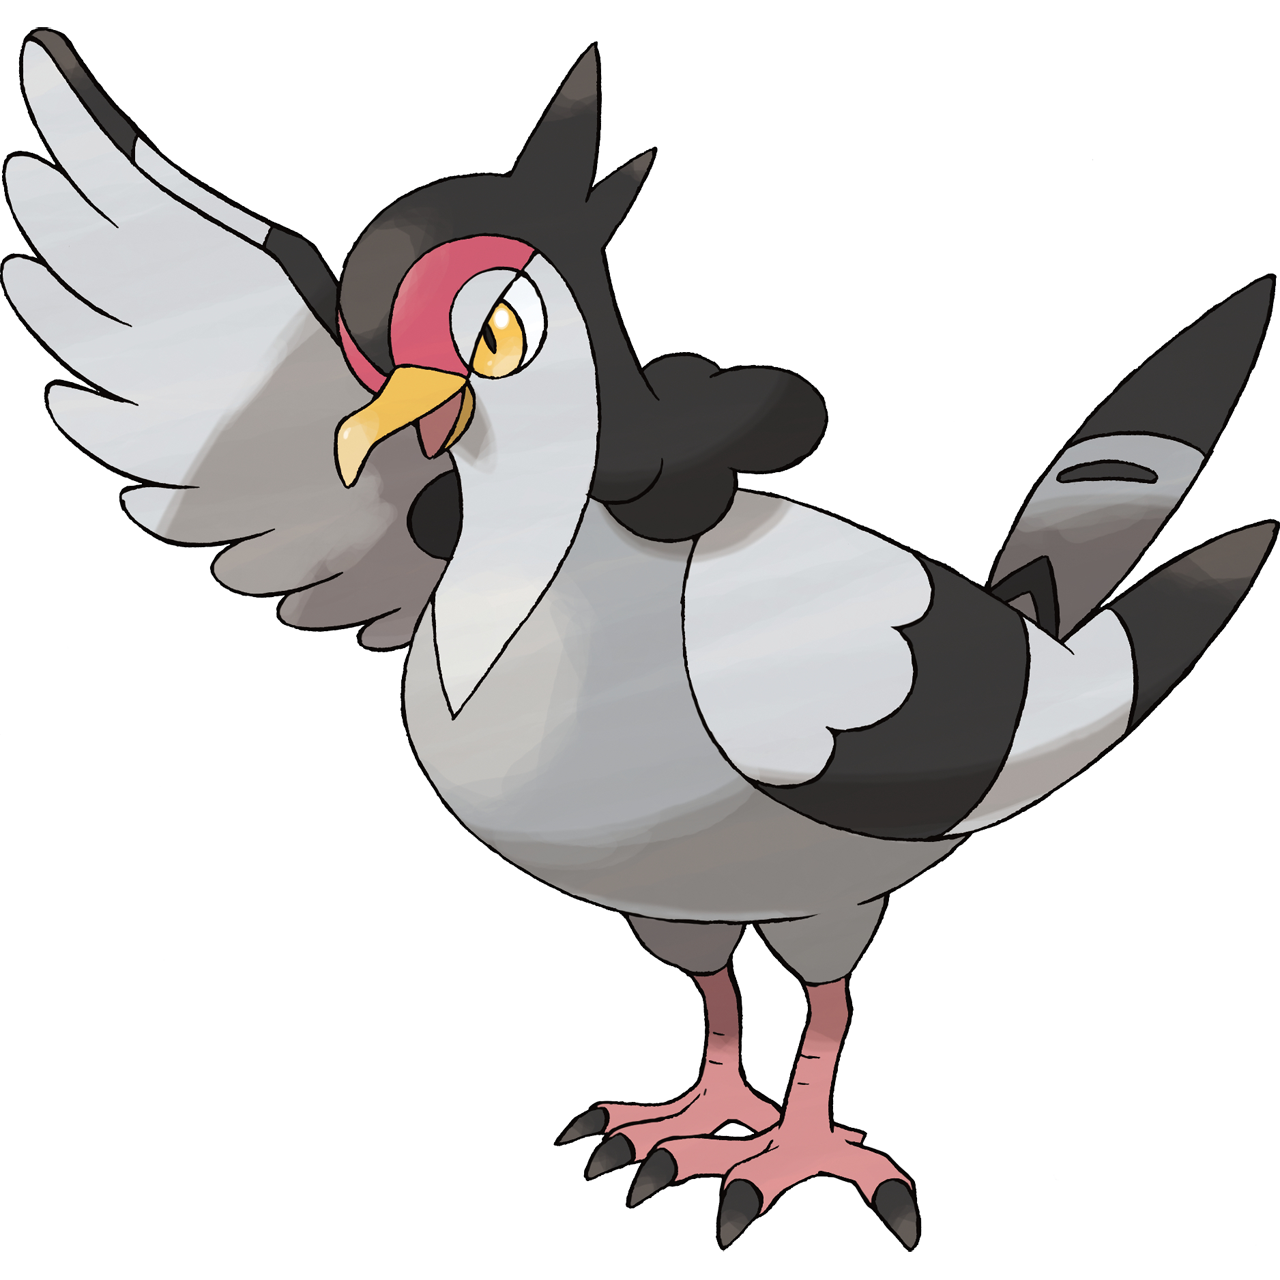 New Region - 013 Birdy - Flying O pokemon passaro. Este pokemon voa em  bandos sobre campos e cidades. Birdy é um pequeno passaro que se alimenta  de sementes e frutas pequenas.